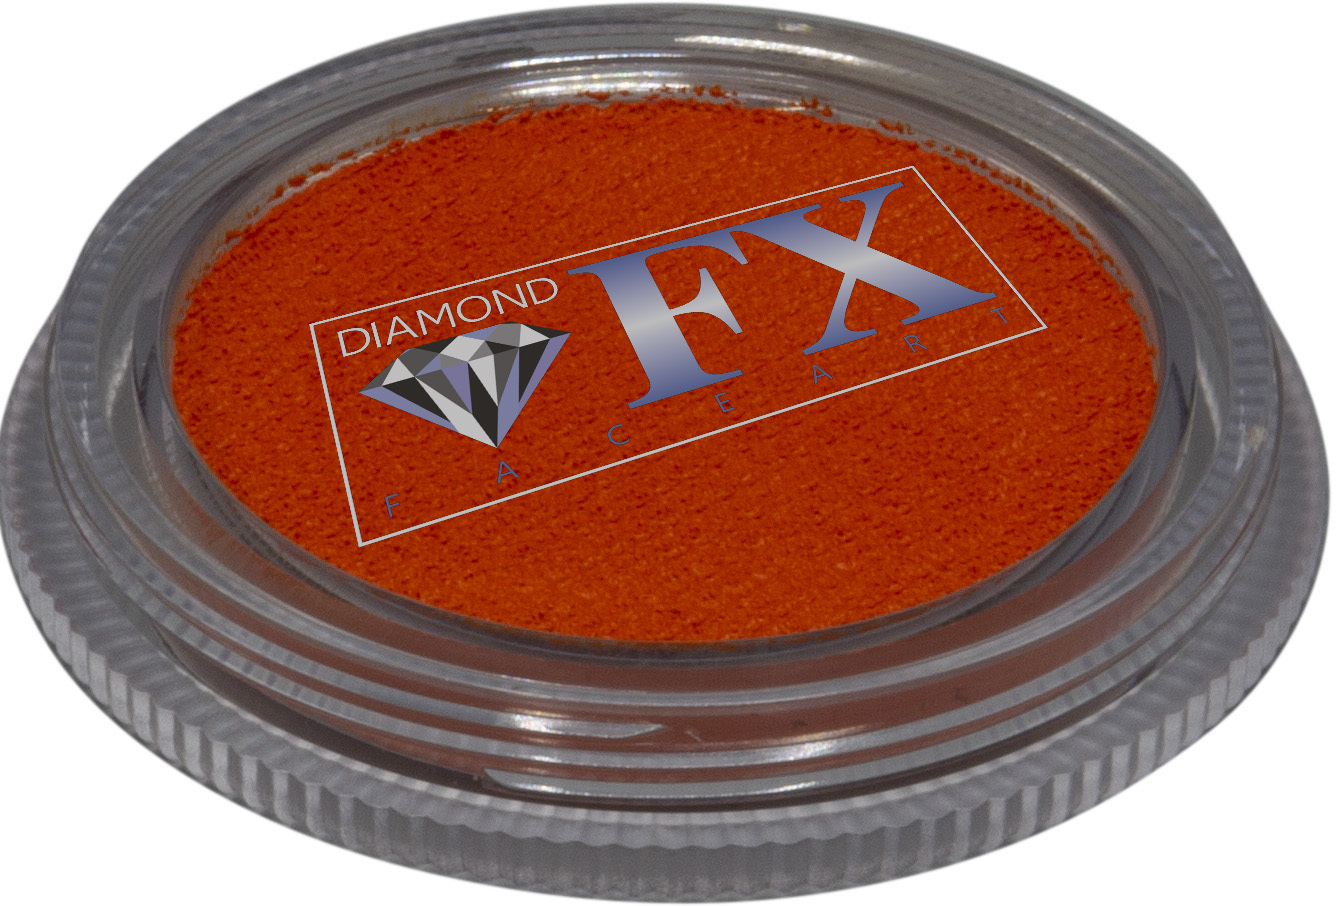 Diamond FX Brilliant Orange 30g - Small Image